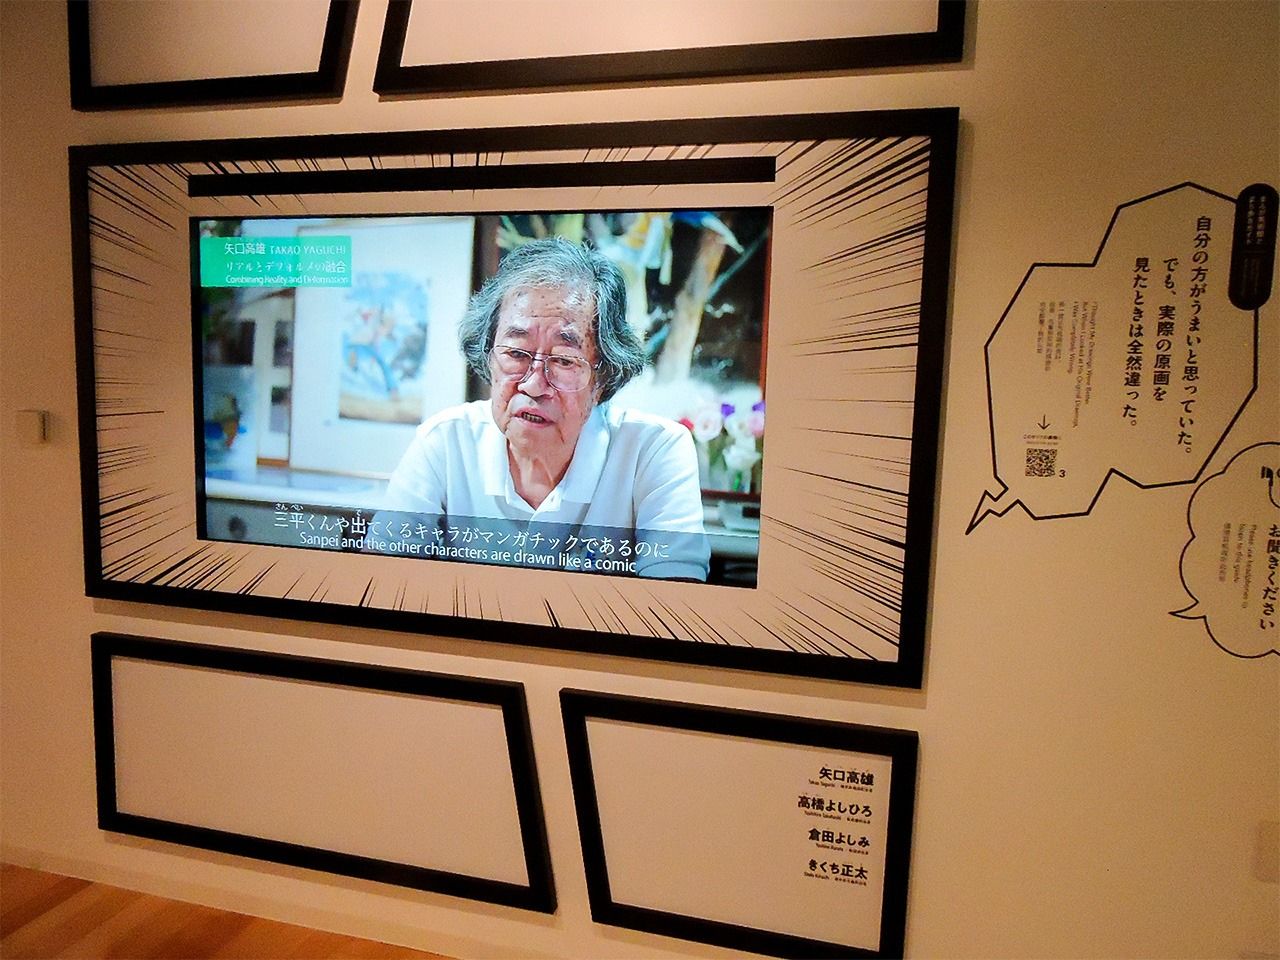 Yaguchi Takao parle des mangas dans un panneau vidéo du musée du manga de Yokote Masuda. (Photo prise en octobre 2020)